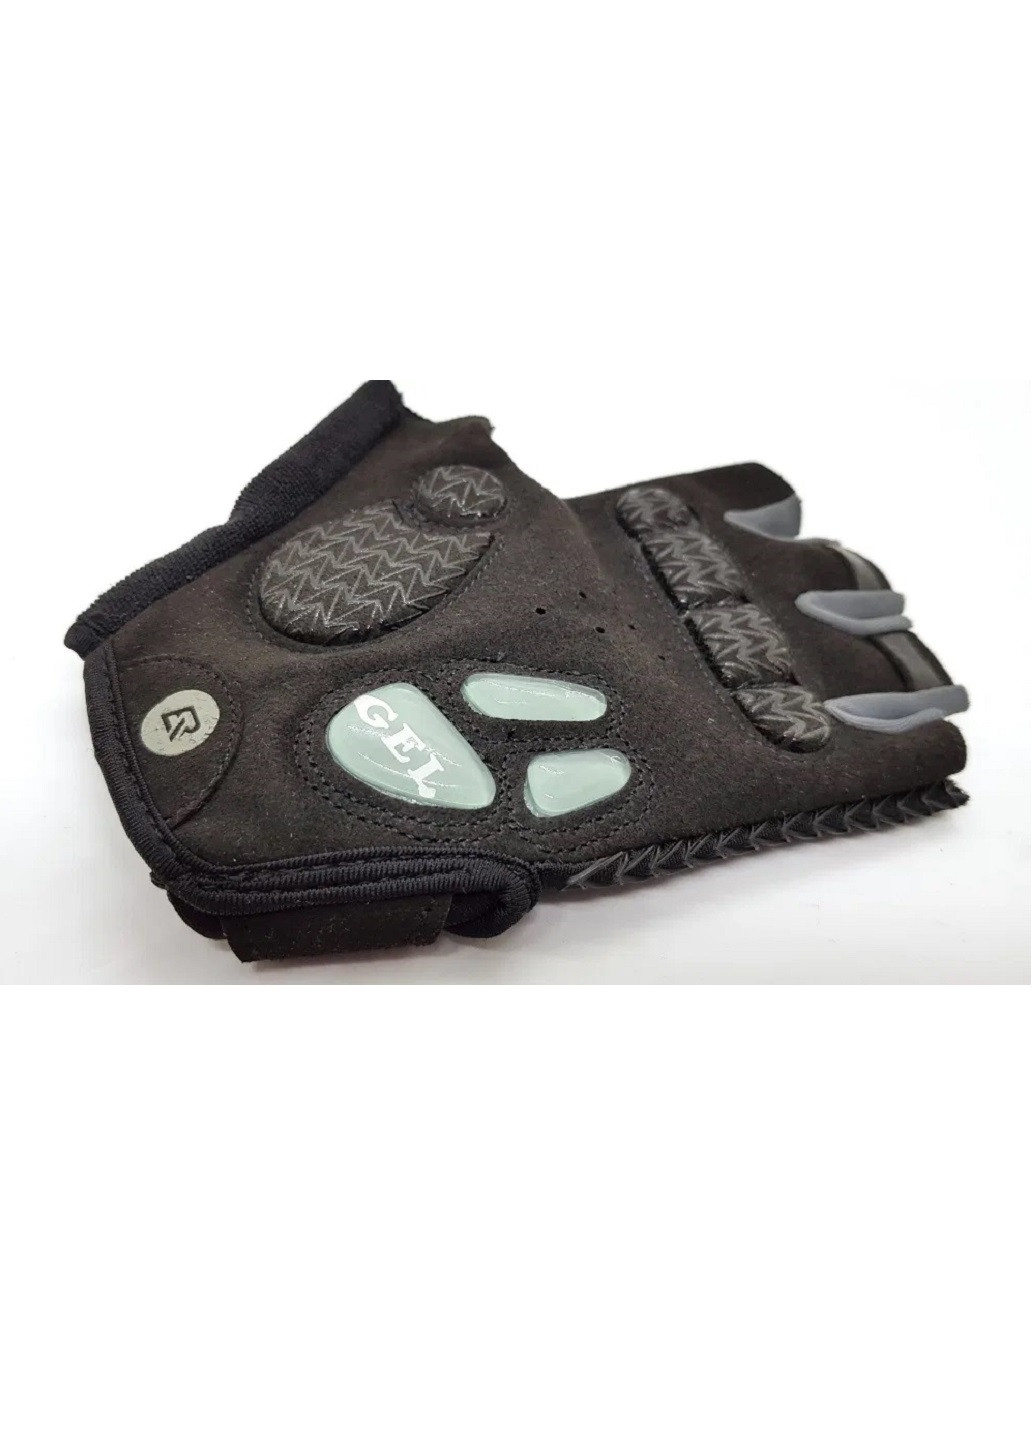 Велосипедные перчатки велоперчатки открытые без пальцев с гелевыми вставки на ладонях (60666-Нов) Размер XXL Francesco Marconi (252816025)